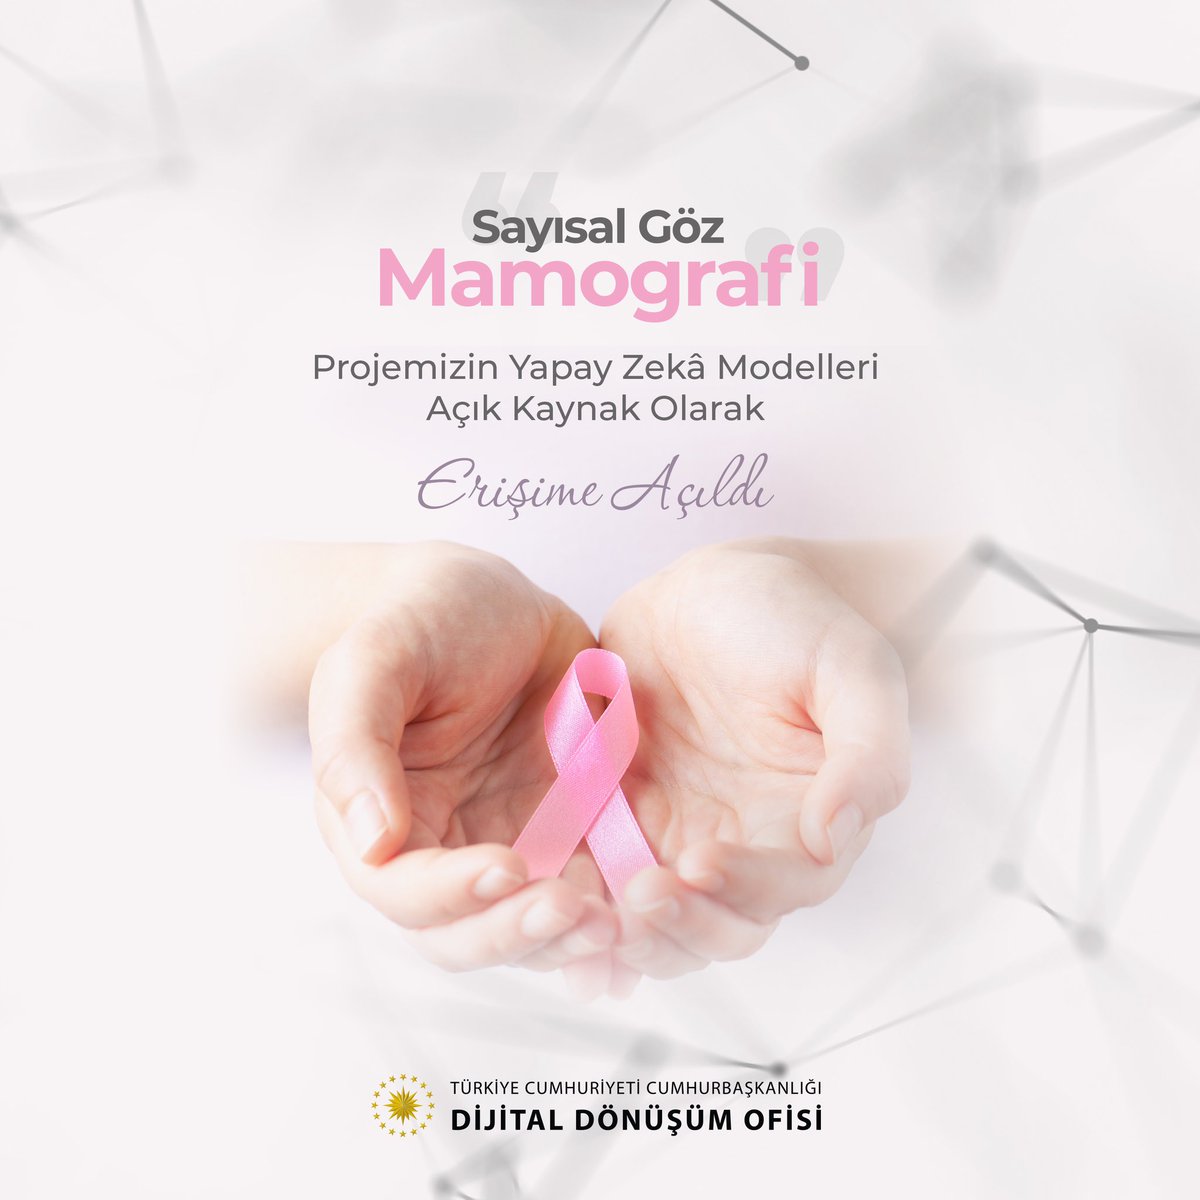 Tüm kadınlarımızın 8 Mart #DünyaKadınlarGünü'nü tebrik ederiz. Tüm dünyada her yıl yüz binlerce kadını etkileyen meme kanserini erken tanıya yardımcı olmak için yürüttüğümüz mamografi görüntülerinden kitle tespiti yapan “Sayısal Göz-Mamografi” projemizin #YapayZeka modellerini, 8…